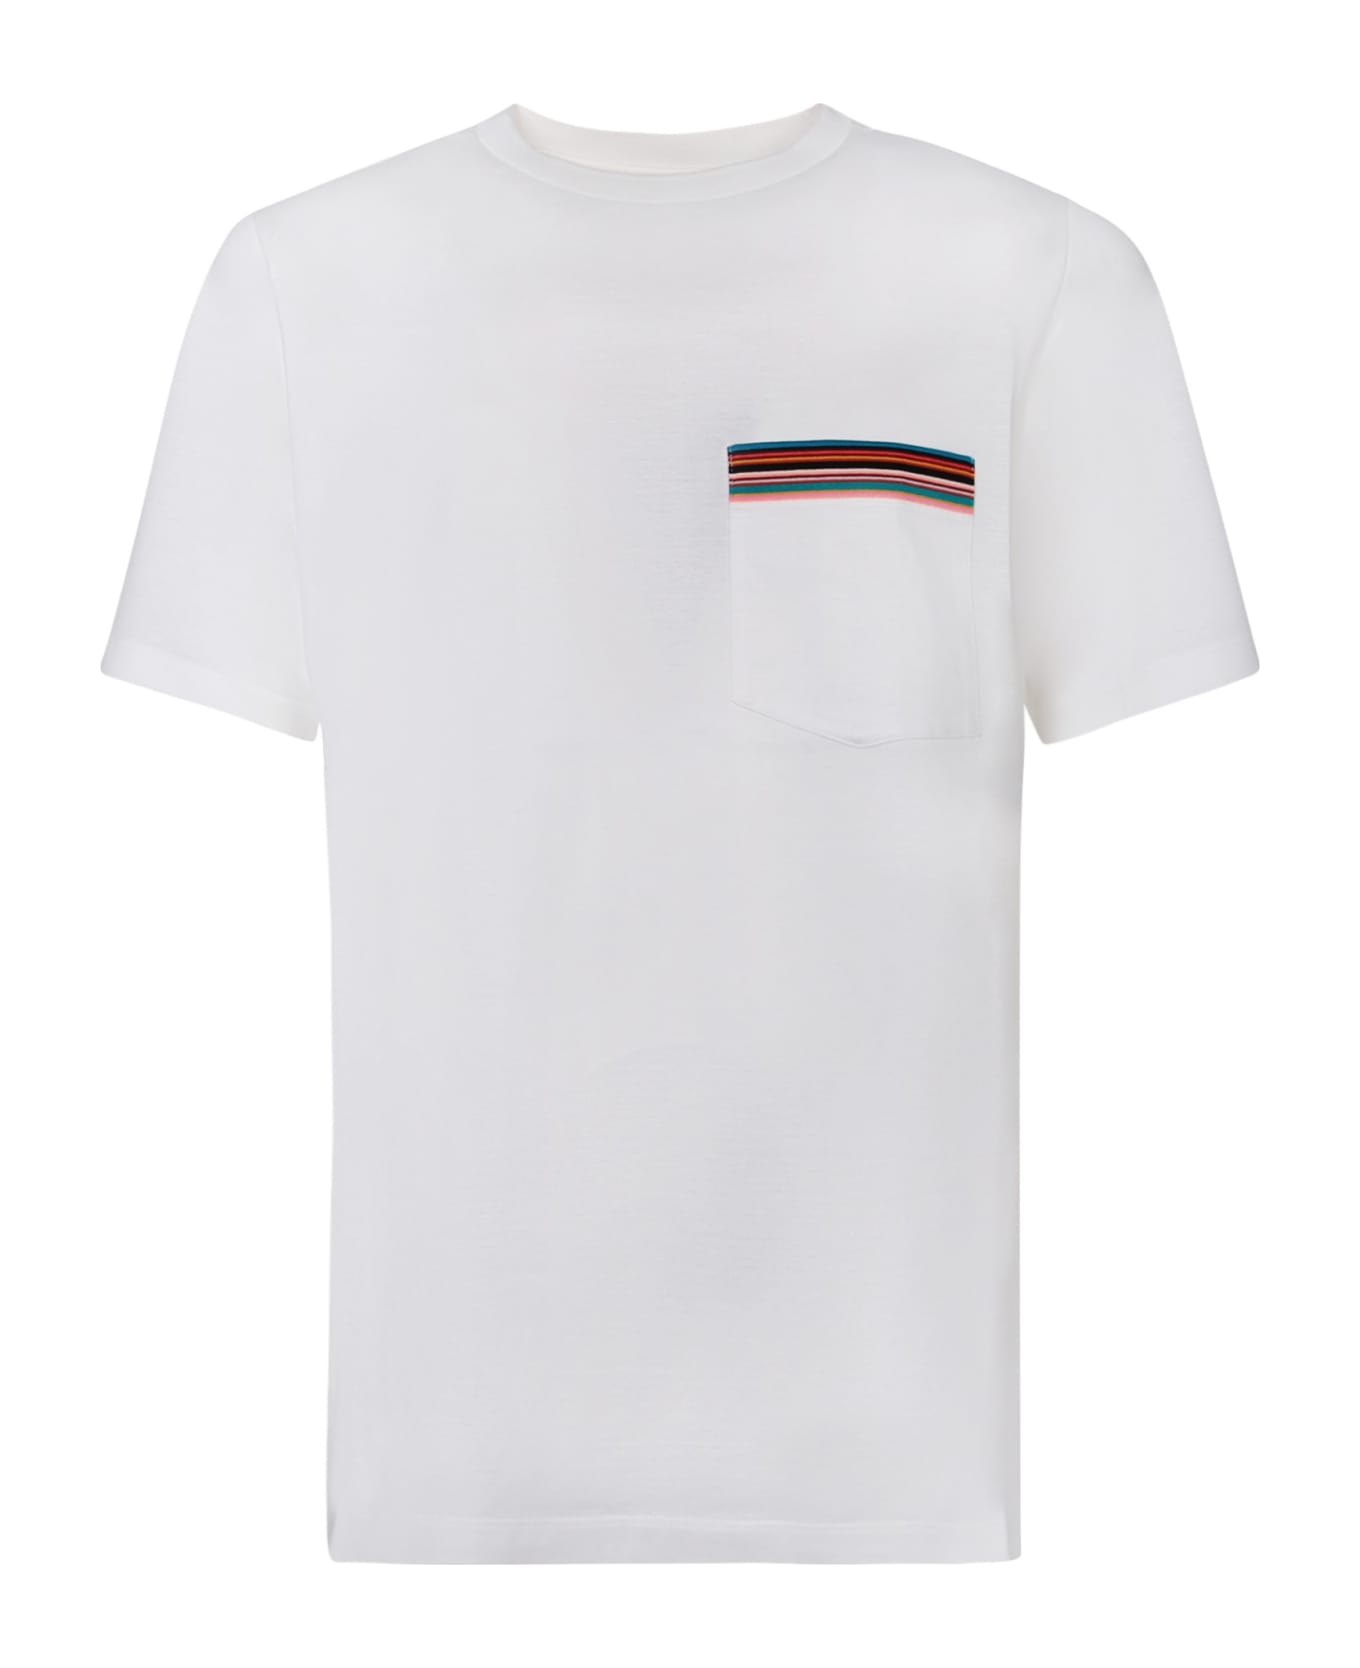 Paul Smith Pocket White T-shirt - White シャツ